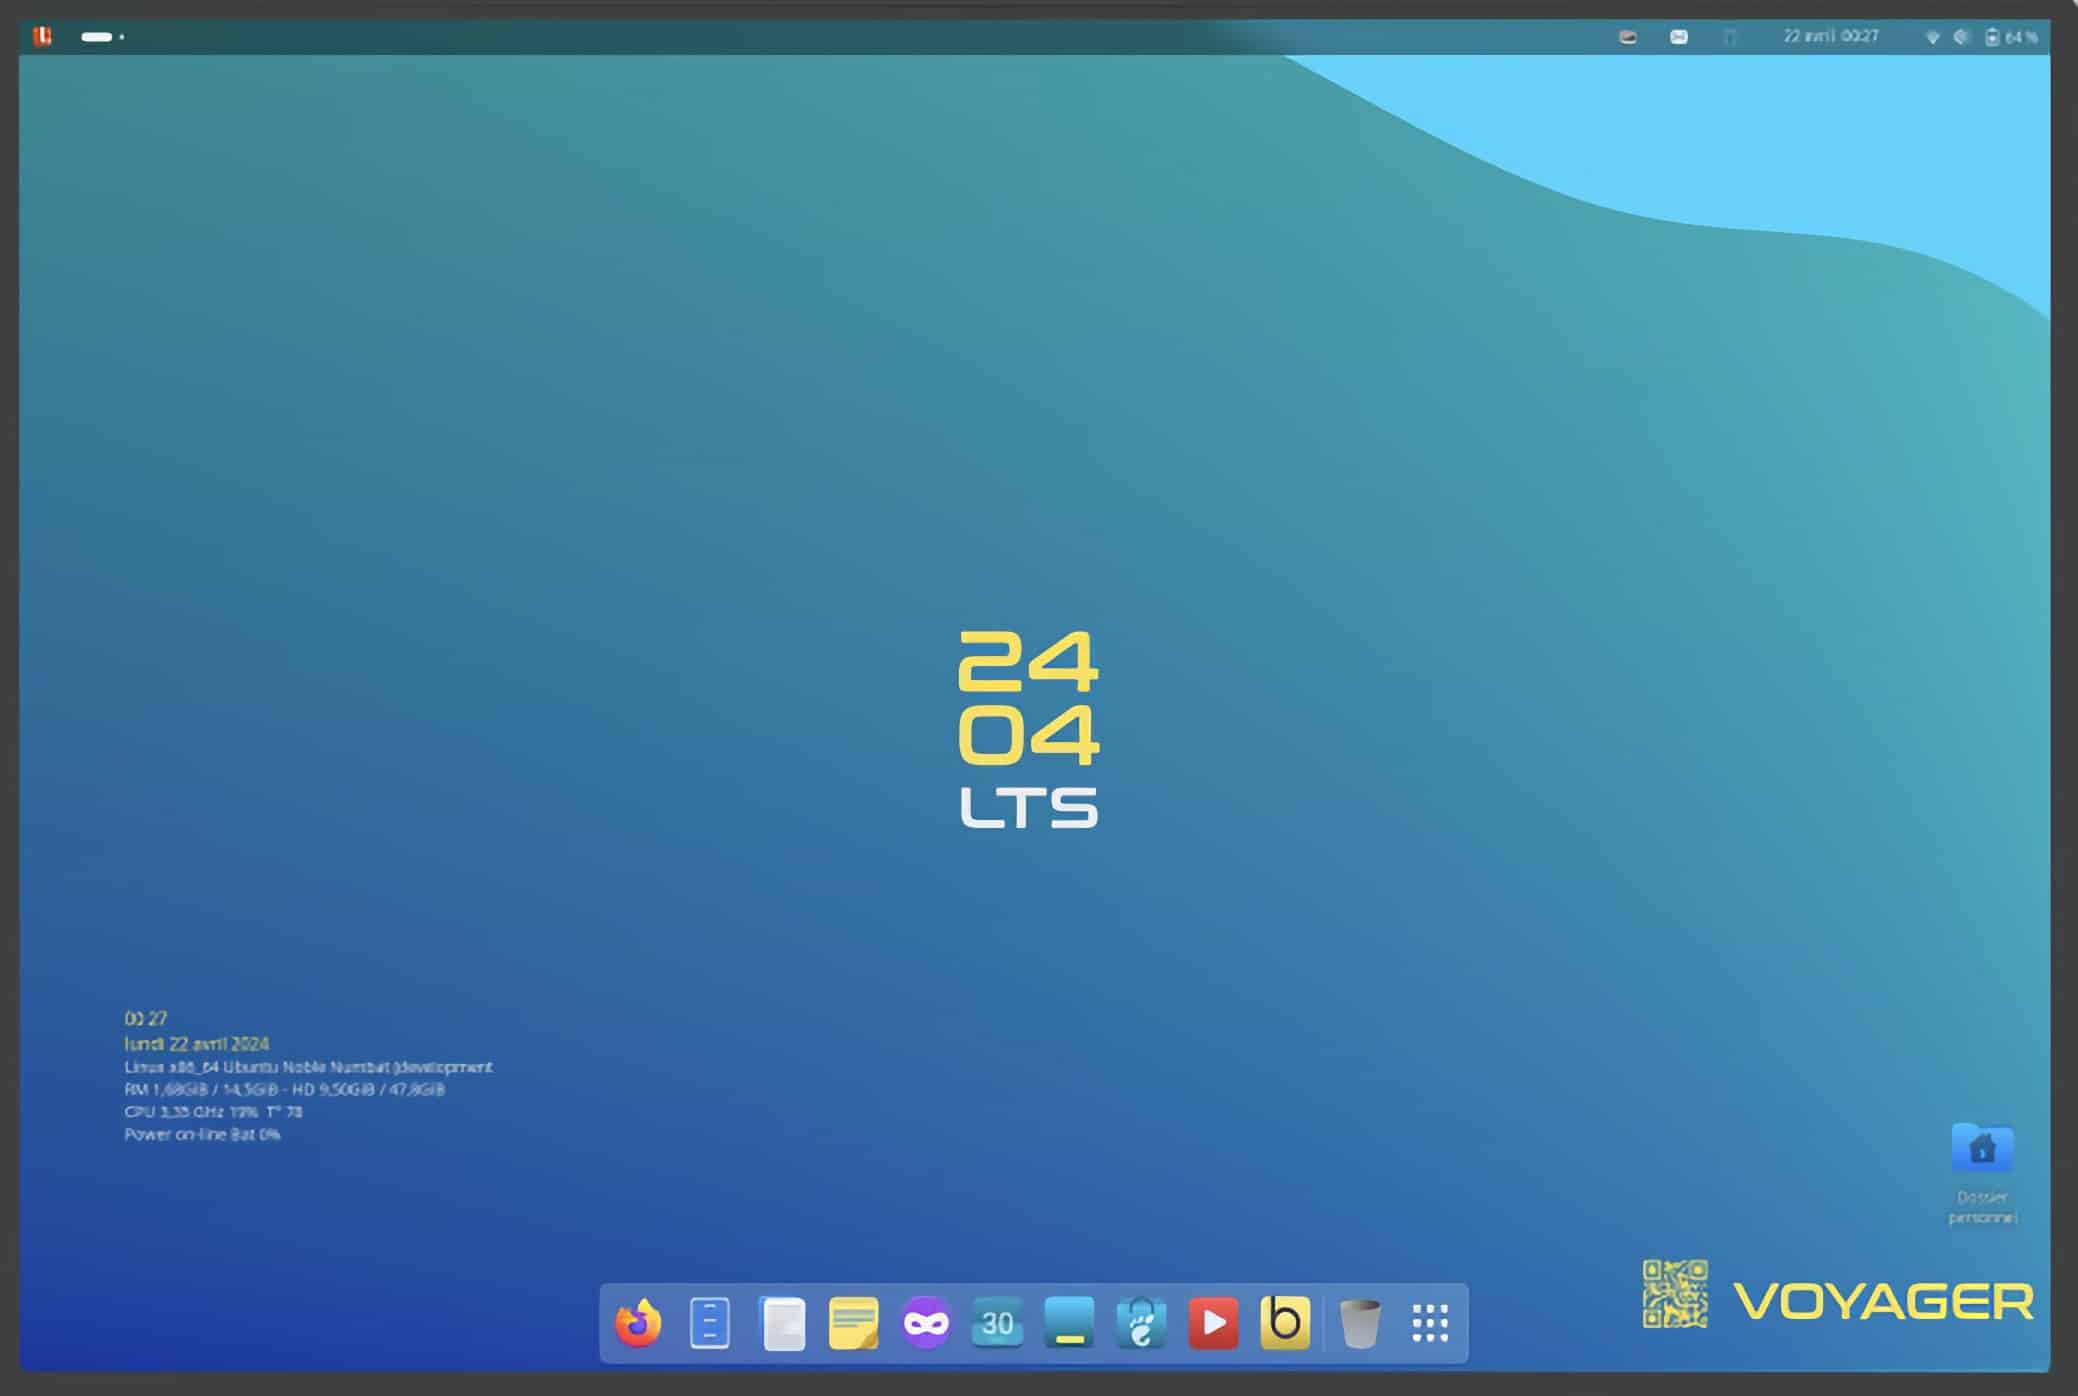 Ubuntu Linux-based Voyager 24.04 LTS unites GNOME and Xfce